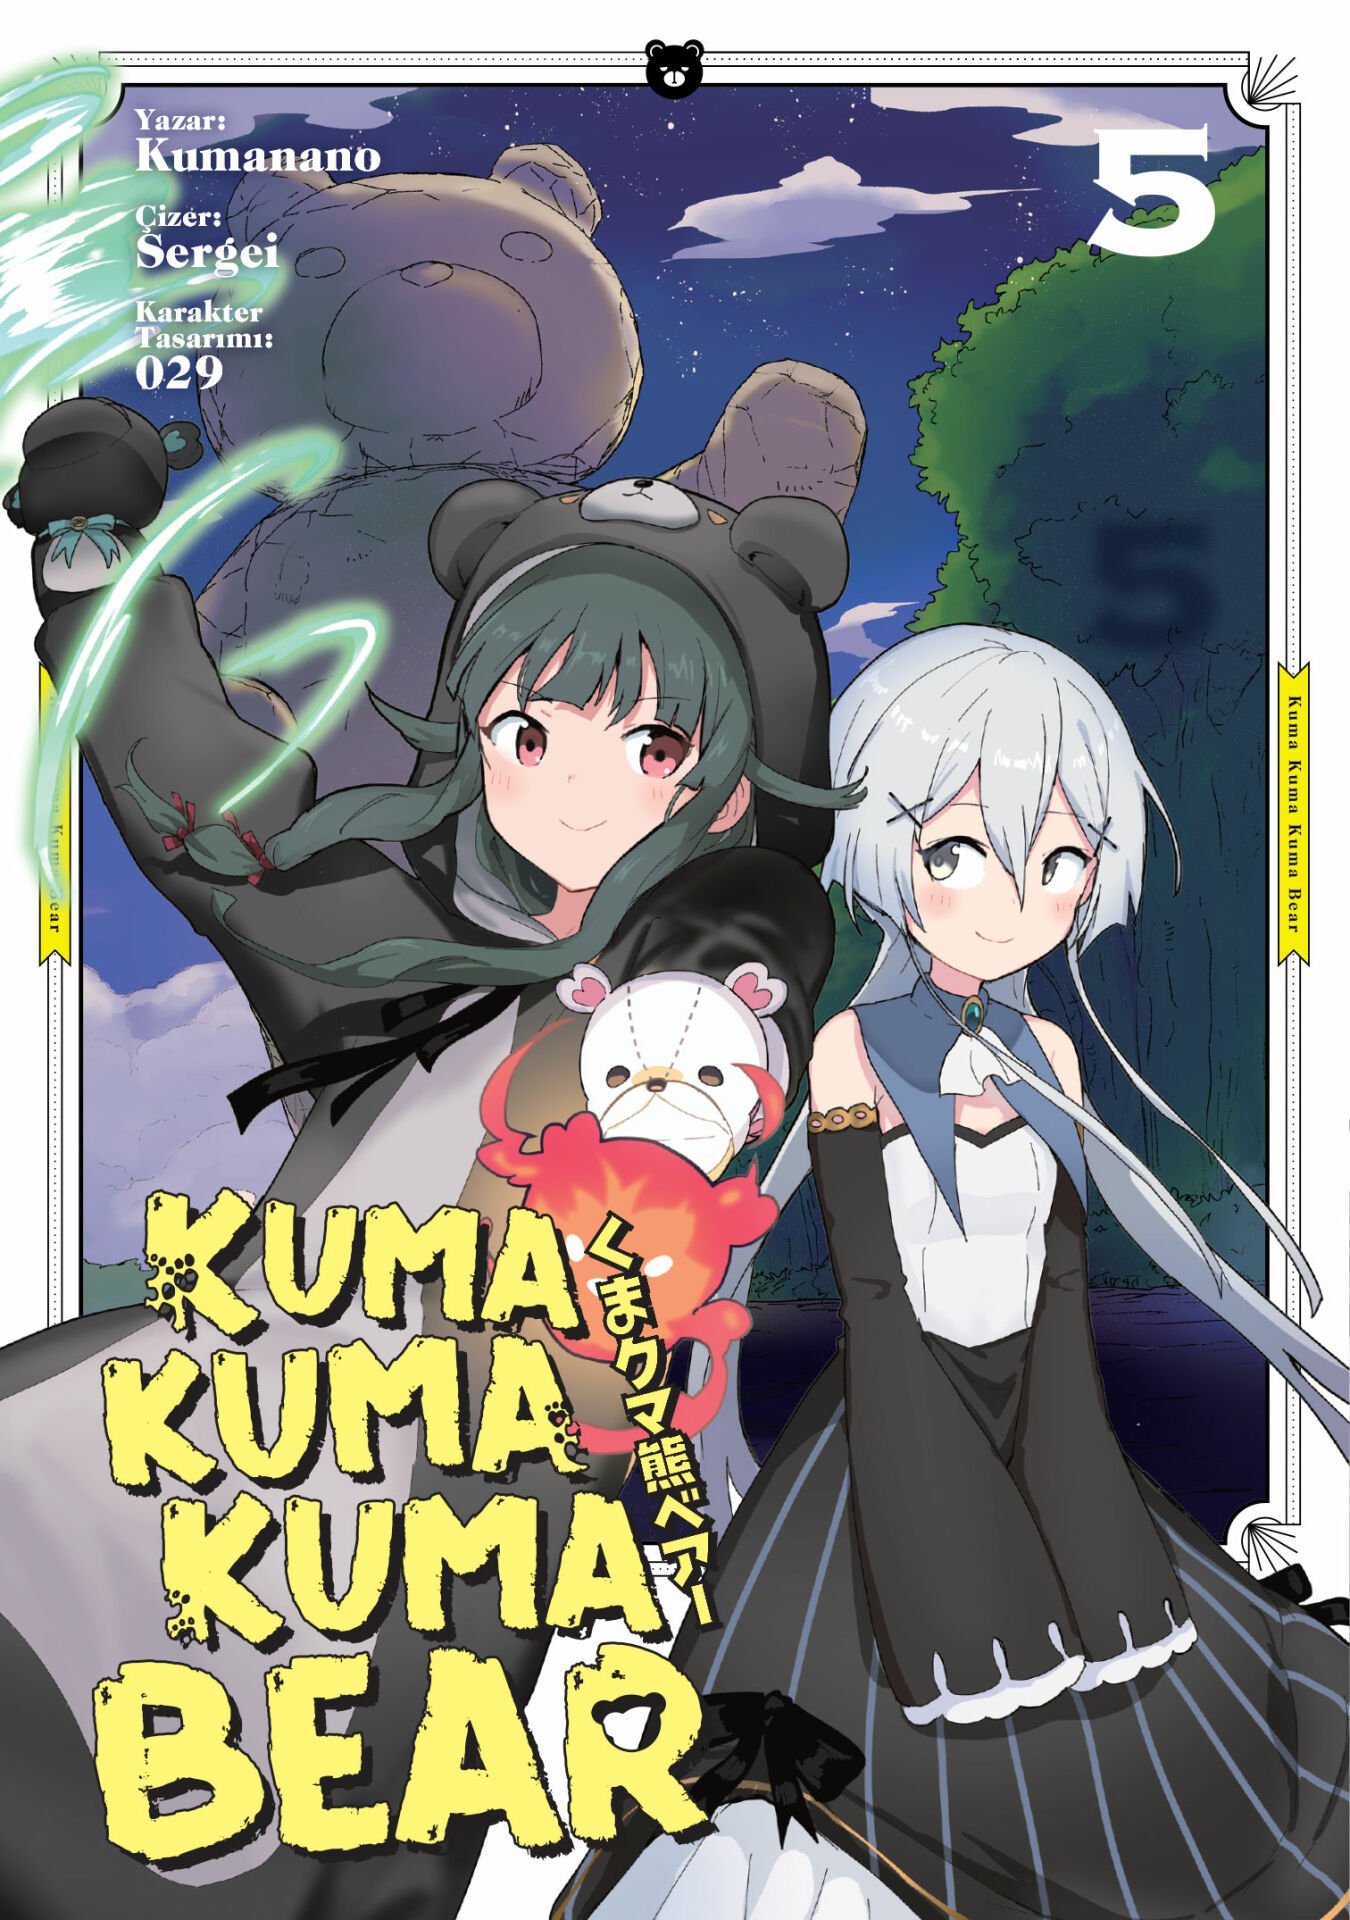 Kuma Kuma Kuma Bear 5 - Manga